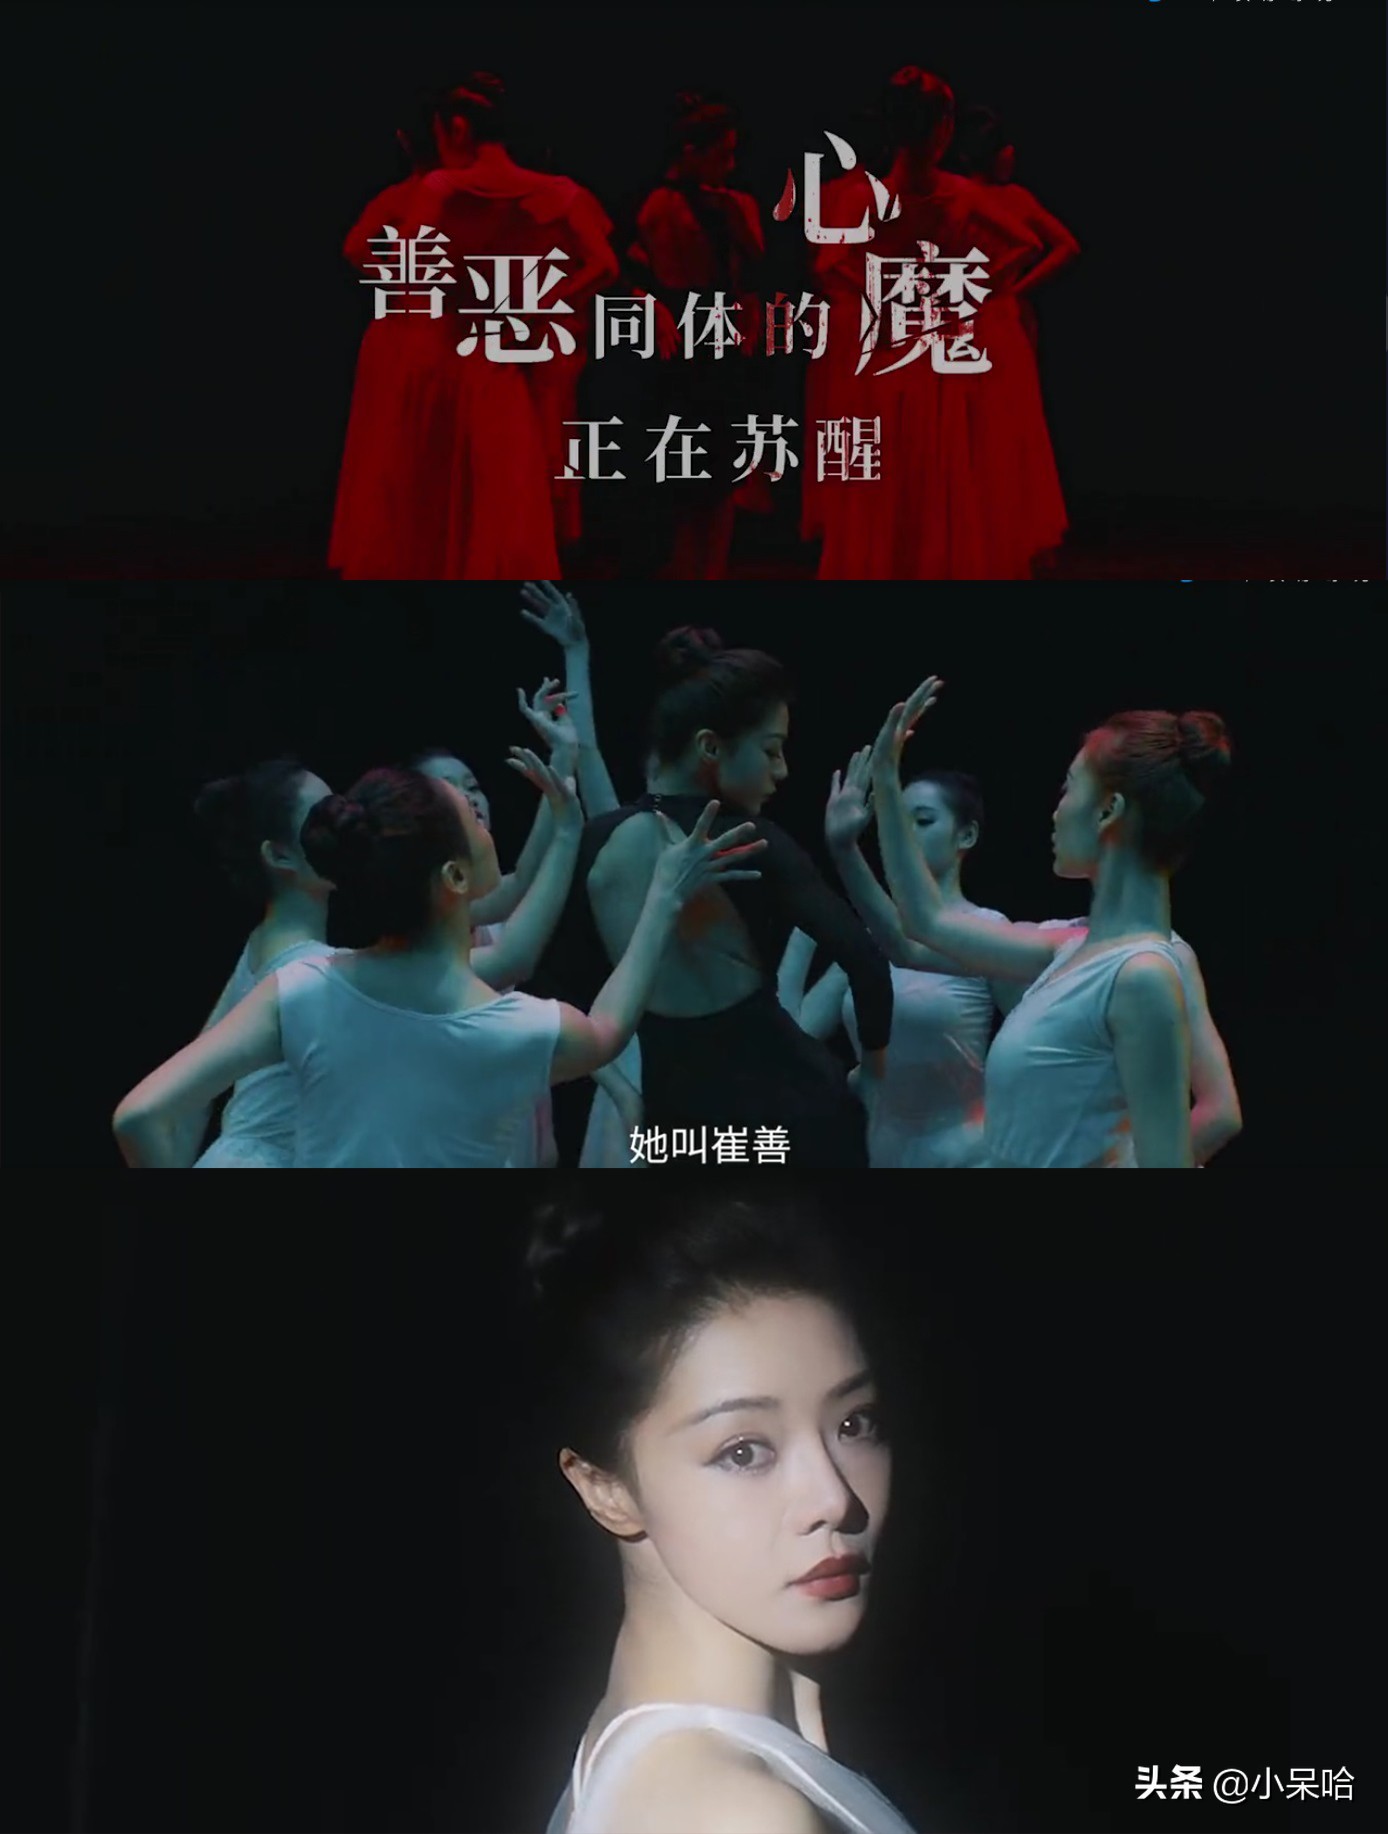 中国悬疑小说第一人作品改编，悬疑女王邓家佳主演，要播了